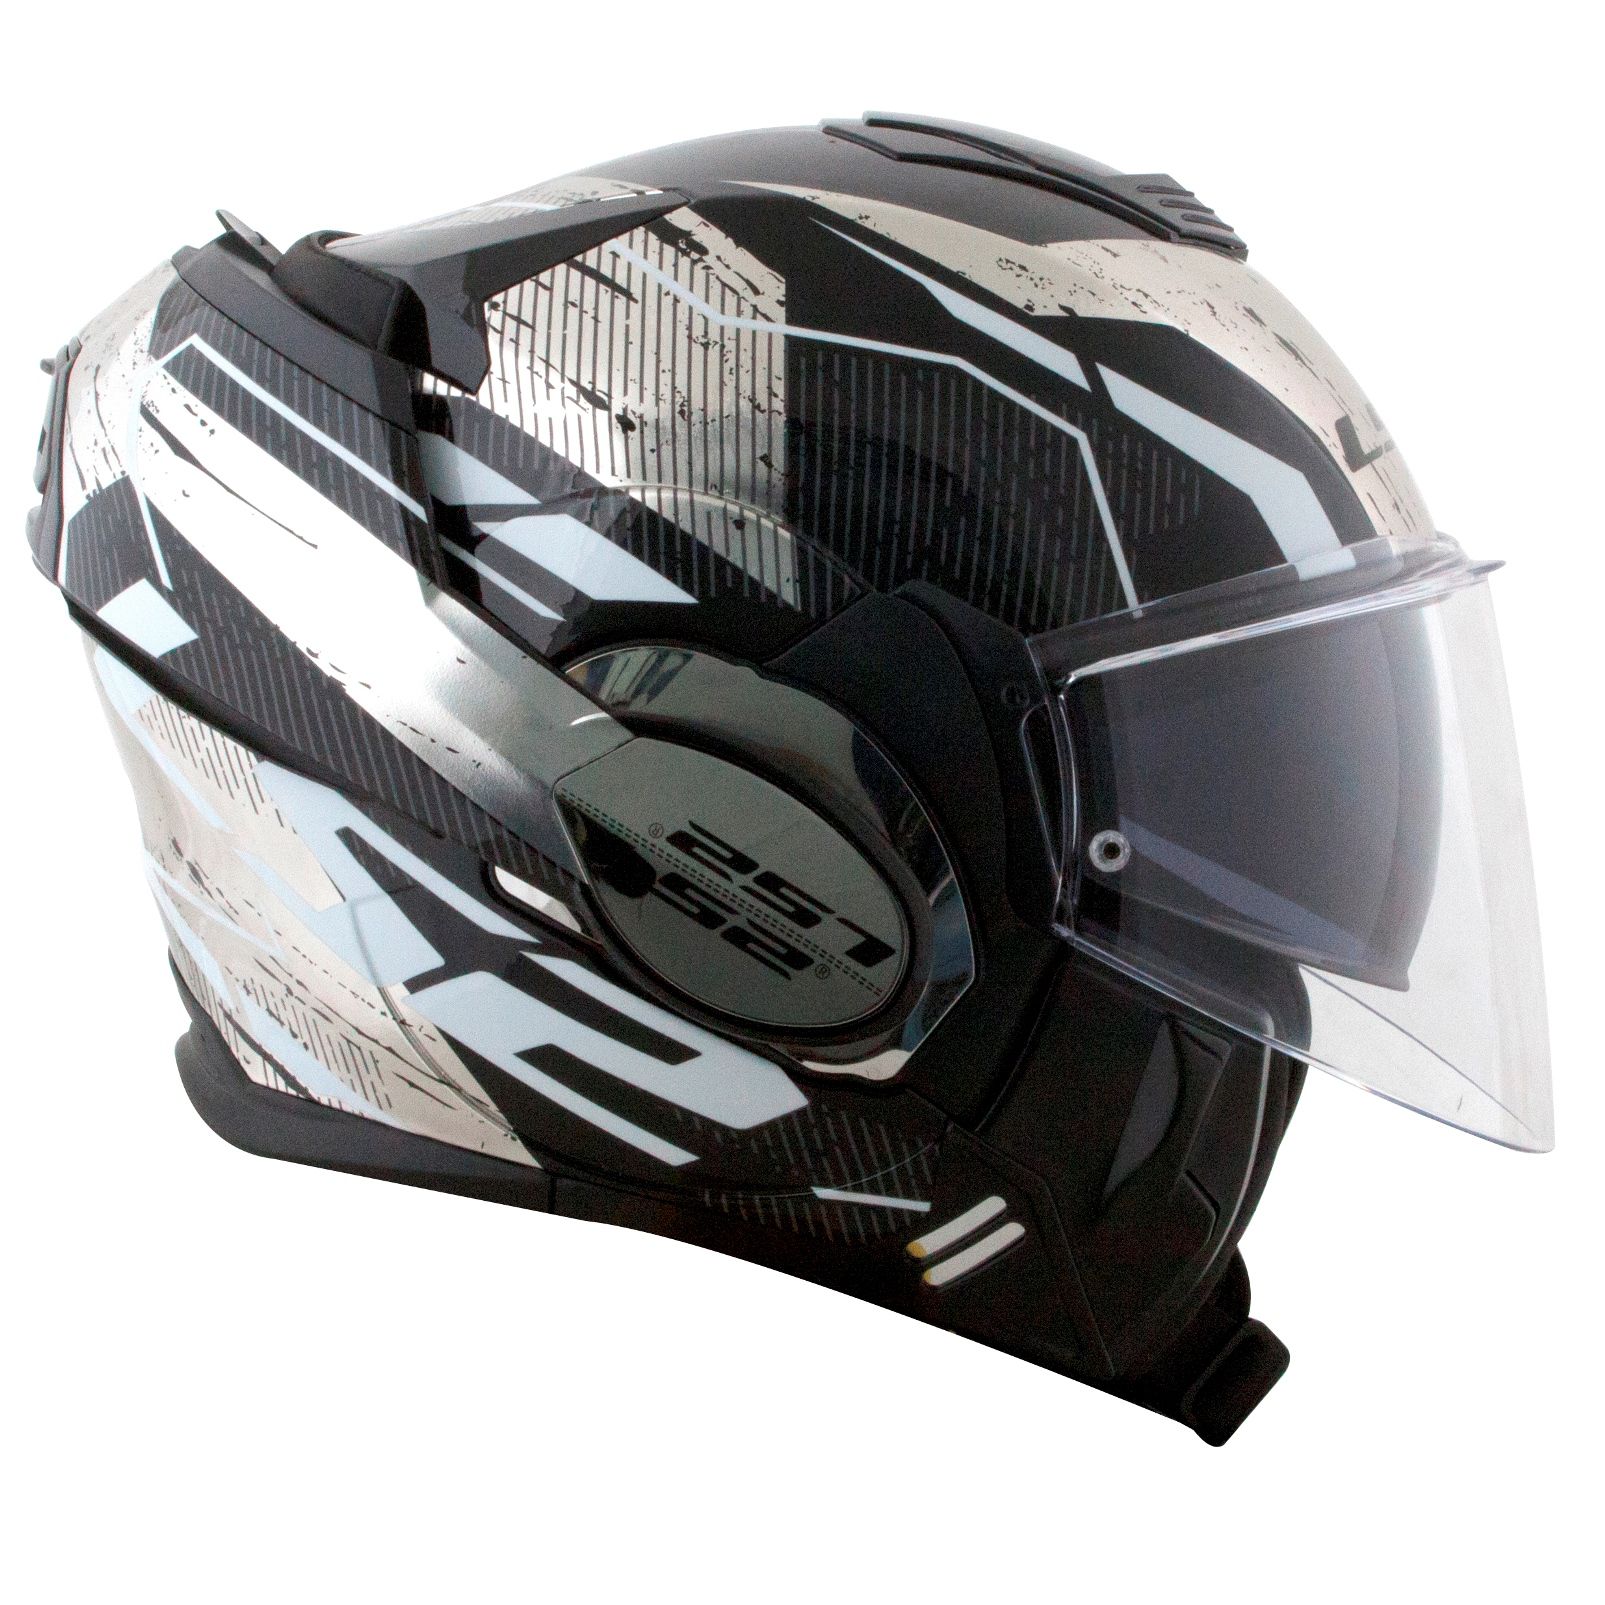 Capacete LS2 FF399 Valiant Roboto - Preto/Prata Brilho - Moto-X Wear - Loja  ideal para Motociclista! Venha conferir as nossas novidades.